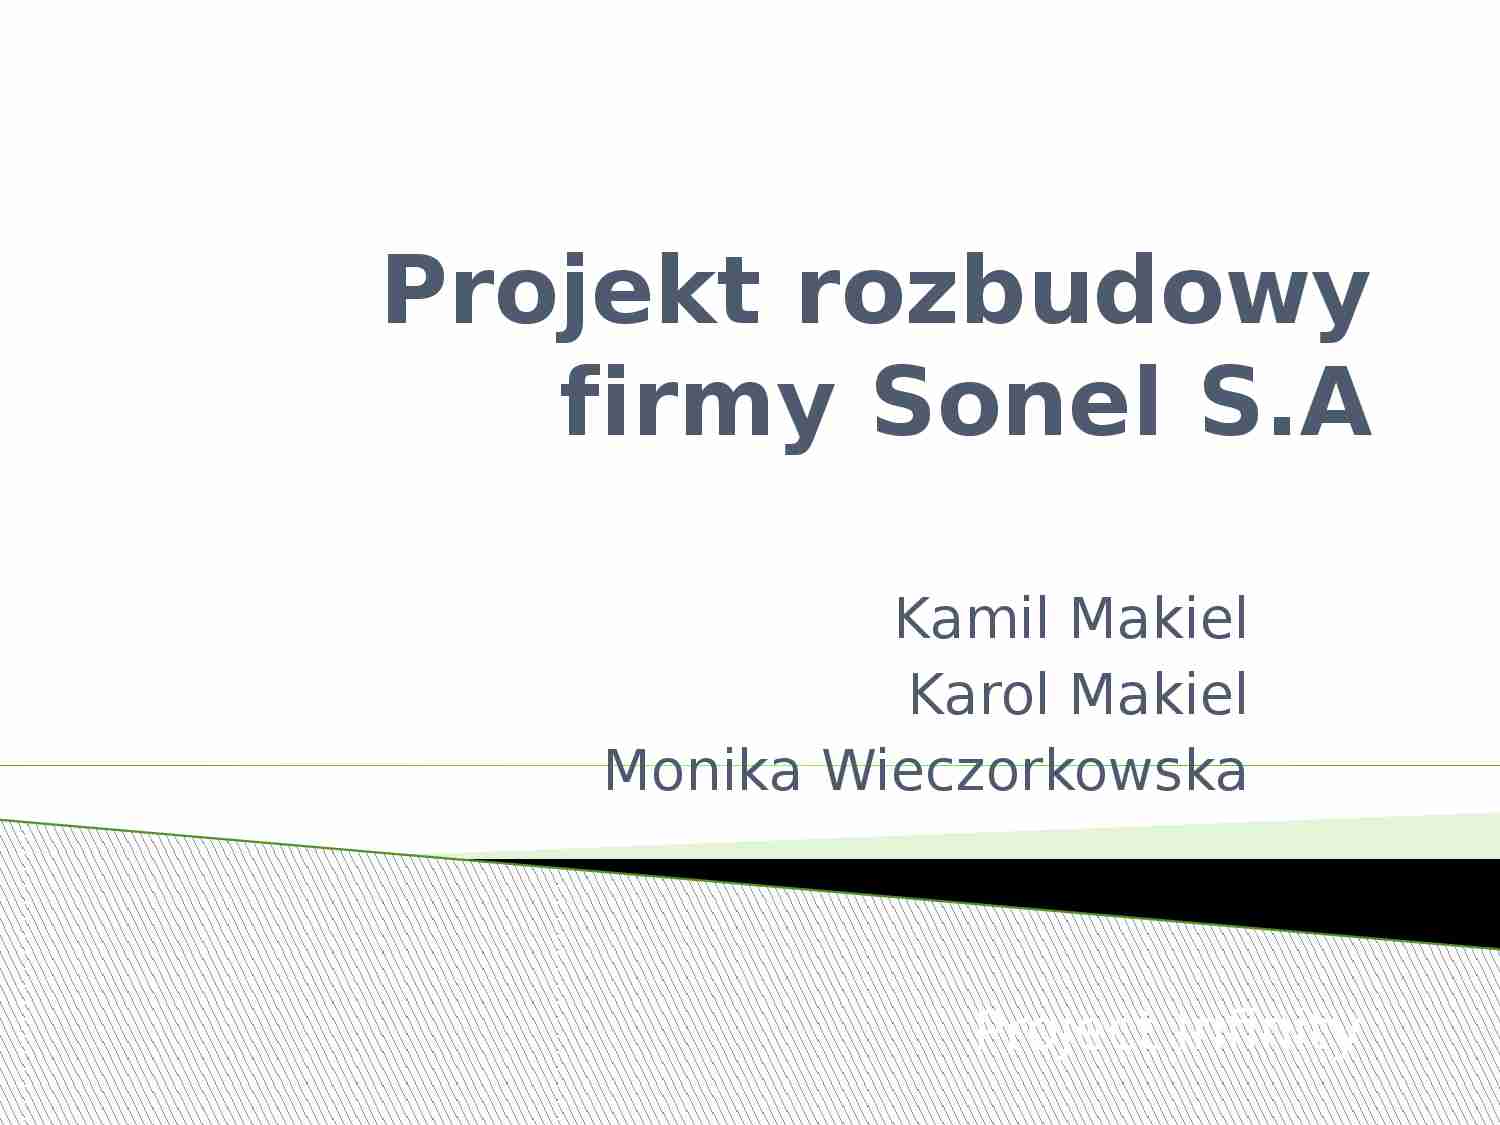 Projekt rozbudowy firmy Sonel S.A - strona 1